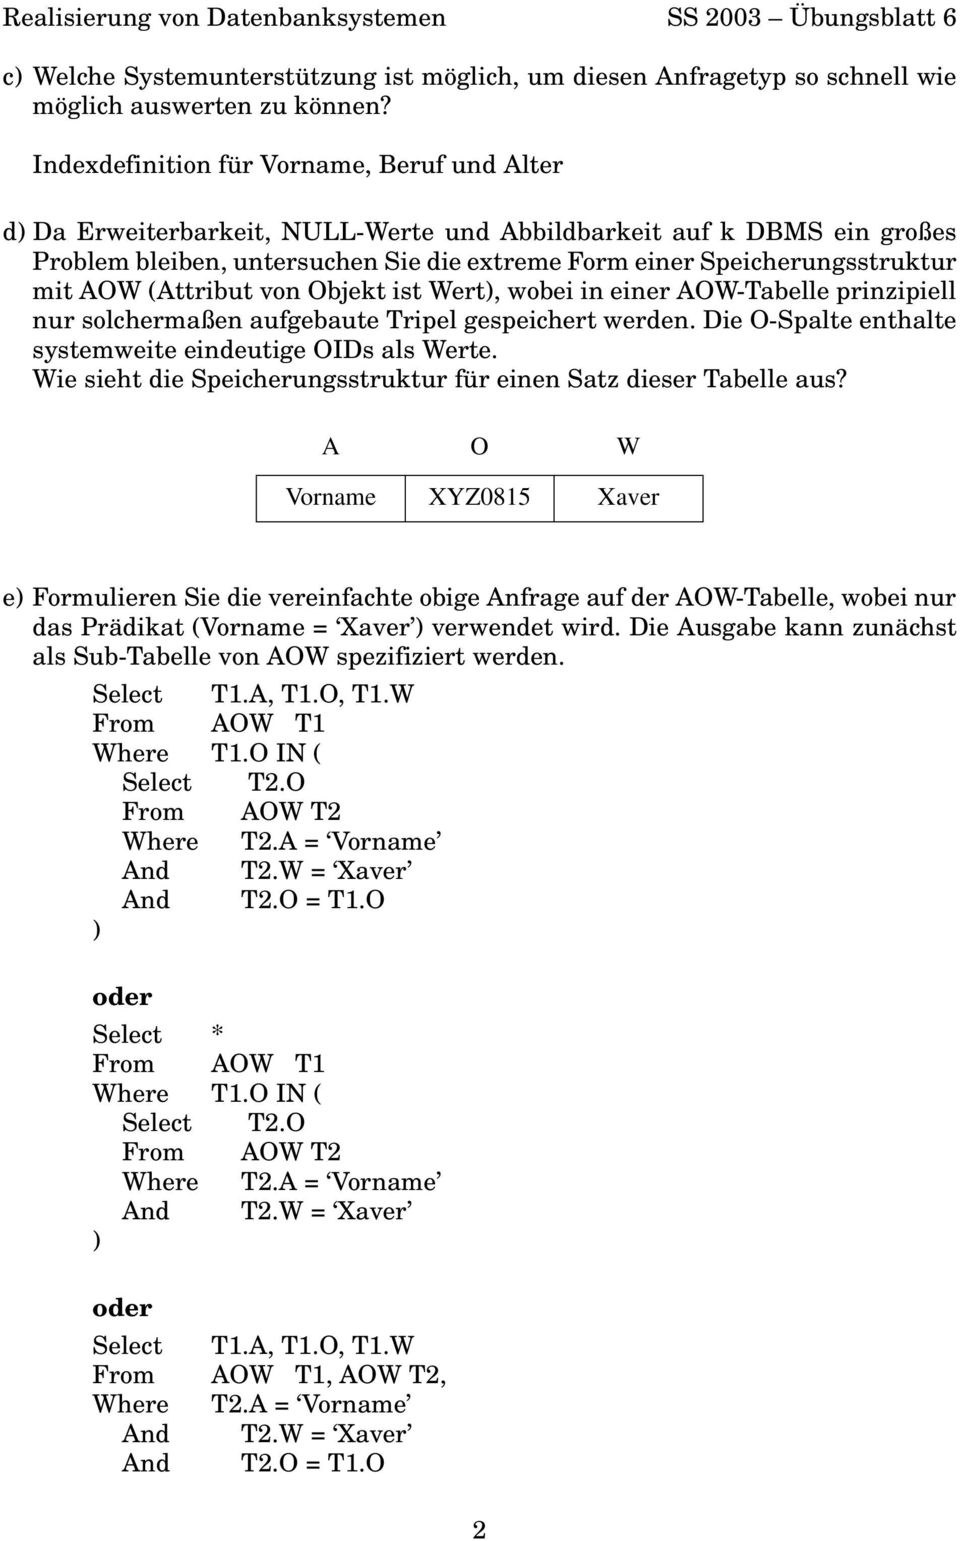 AOW (Attribut von Objekt ist Wert), wobei in einer AOW-Tabelle prinzipiell nur solchermaßen aufgebaute Tripel gespeichert werden. Die O-Spalte enthalte systemweite eindeutige OIDs als Werte.